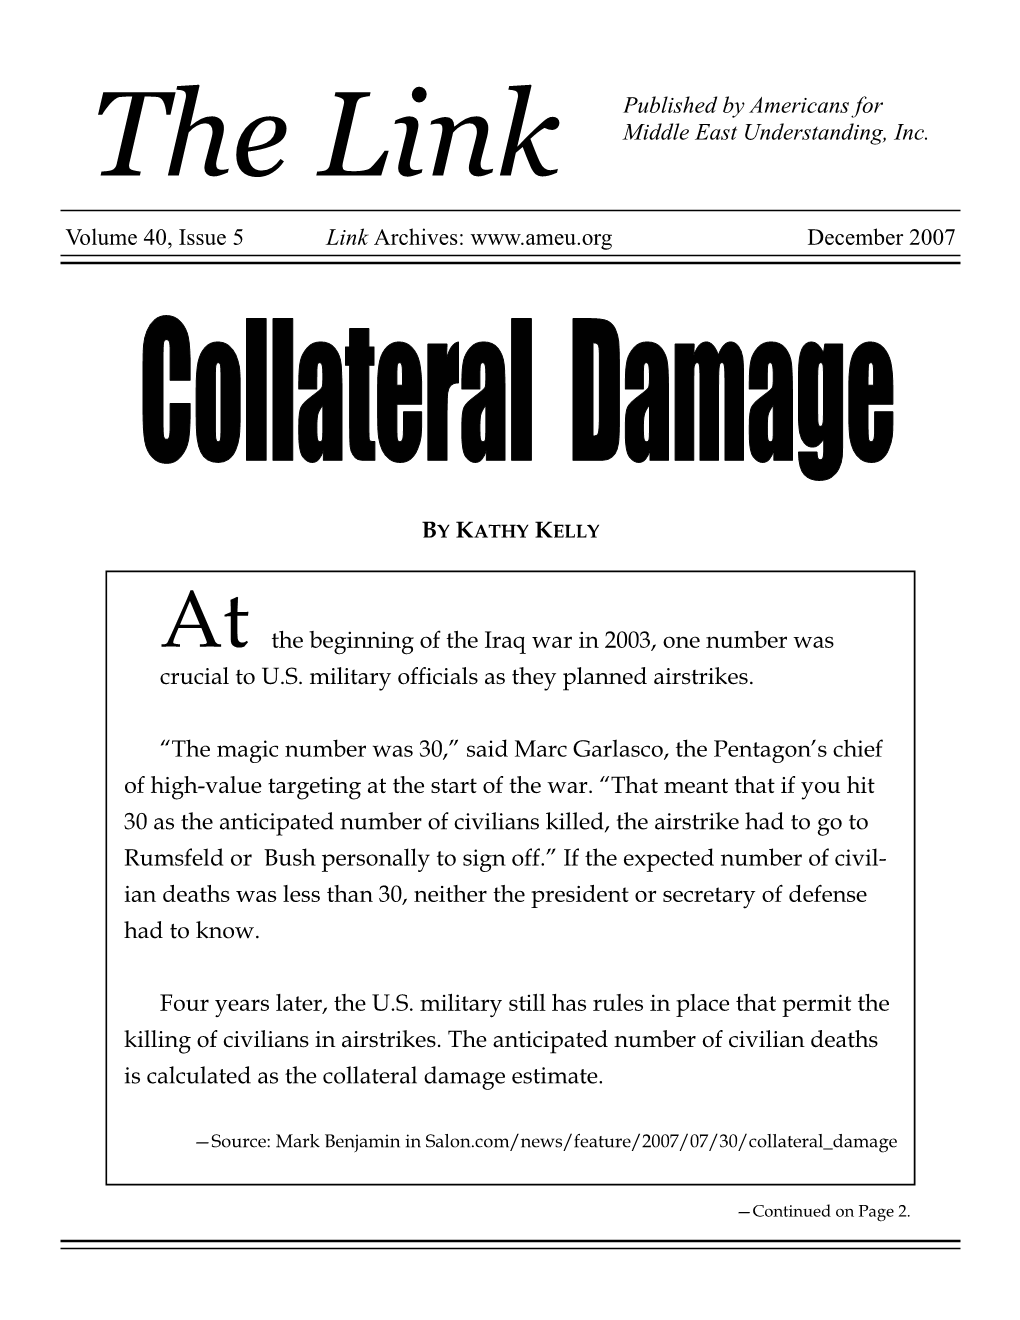 Collateral Damage Estimate